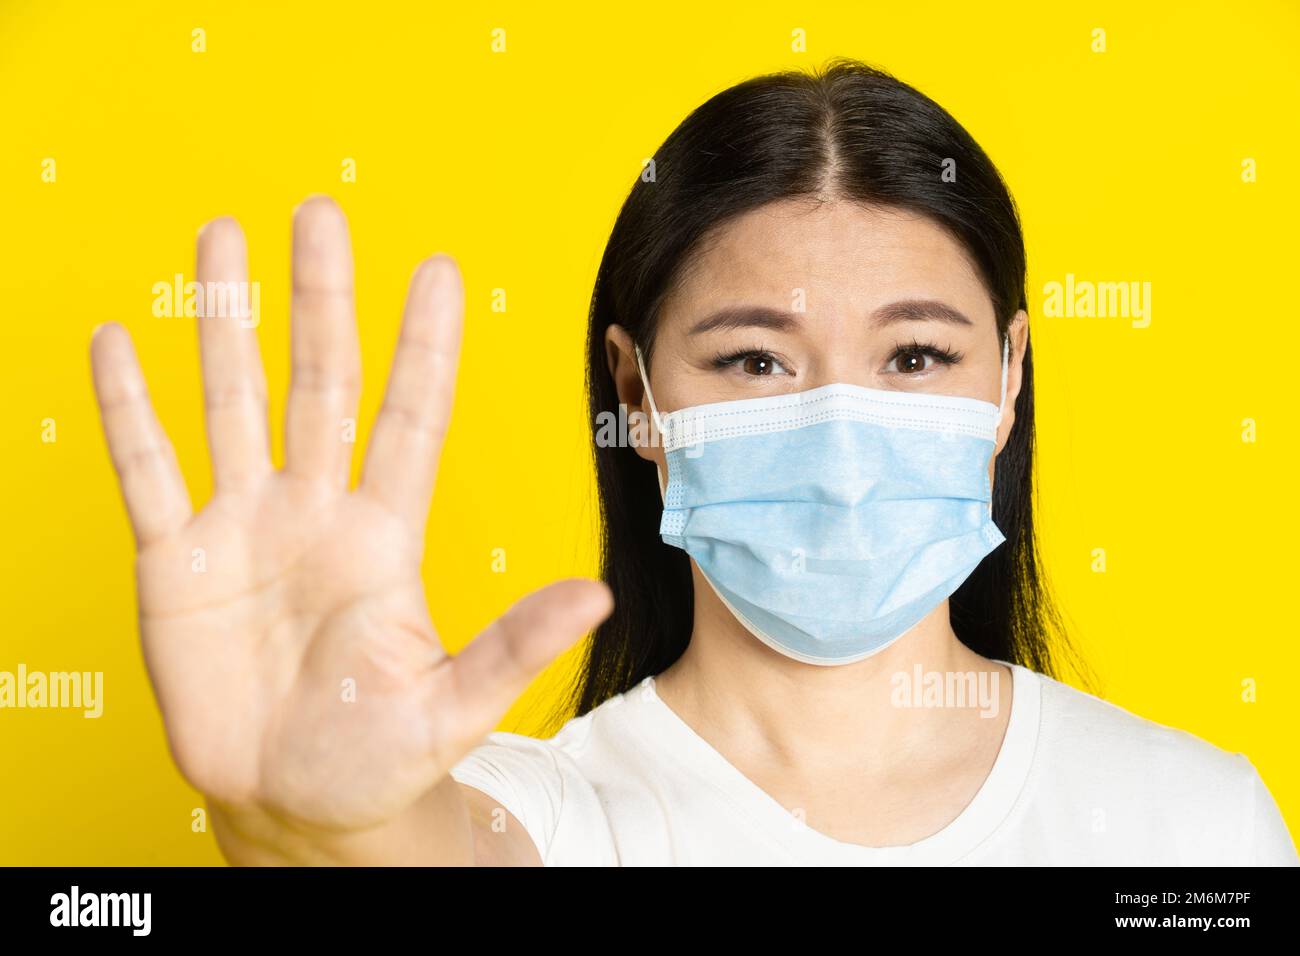 Fragen, um zu stoppen asiatische Frau mittleren Alters tragen medizinische Maske Gesten mit positiven Augen auf Kamera isoliert auf Yello zu halten Stockfoto